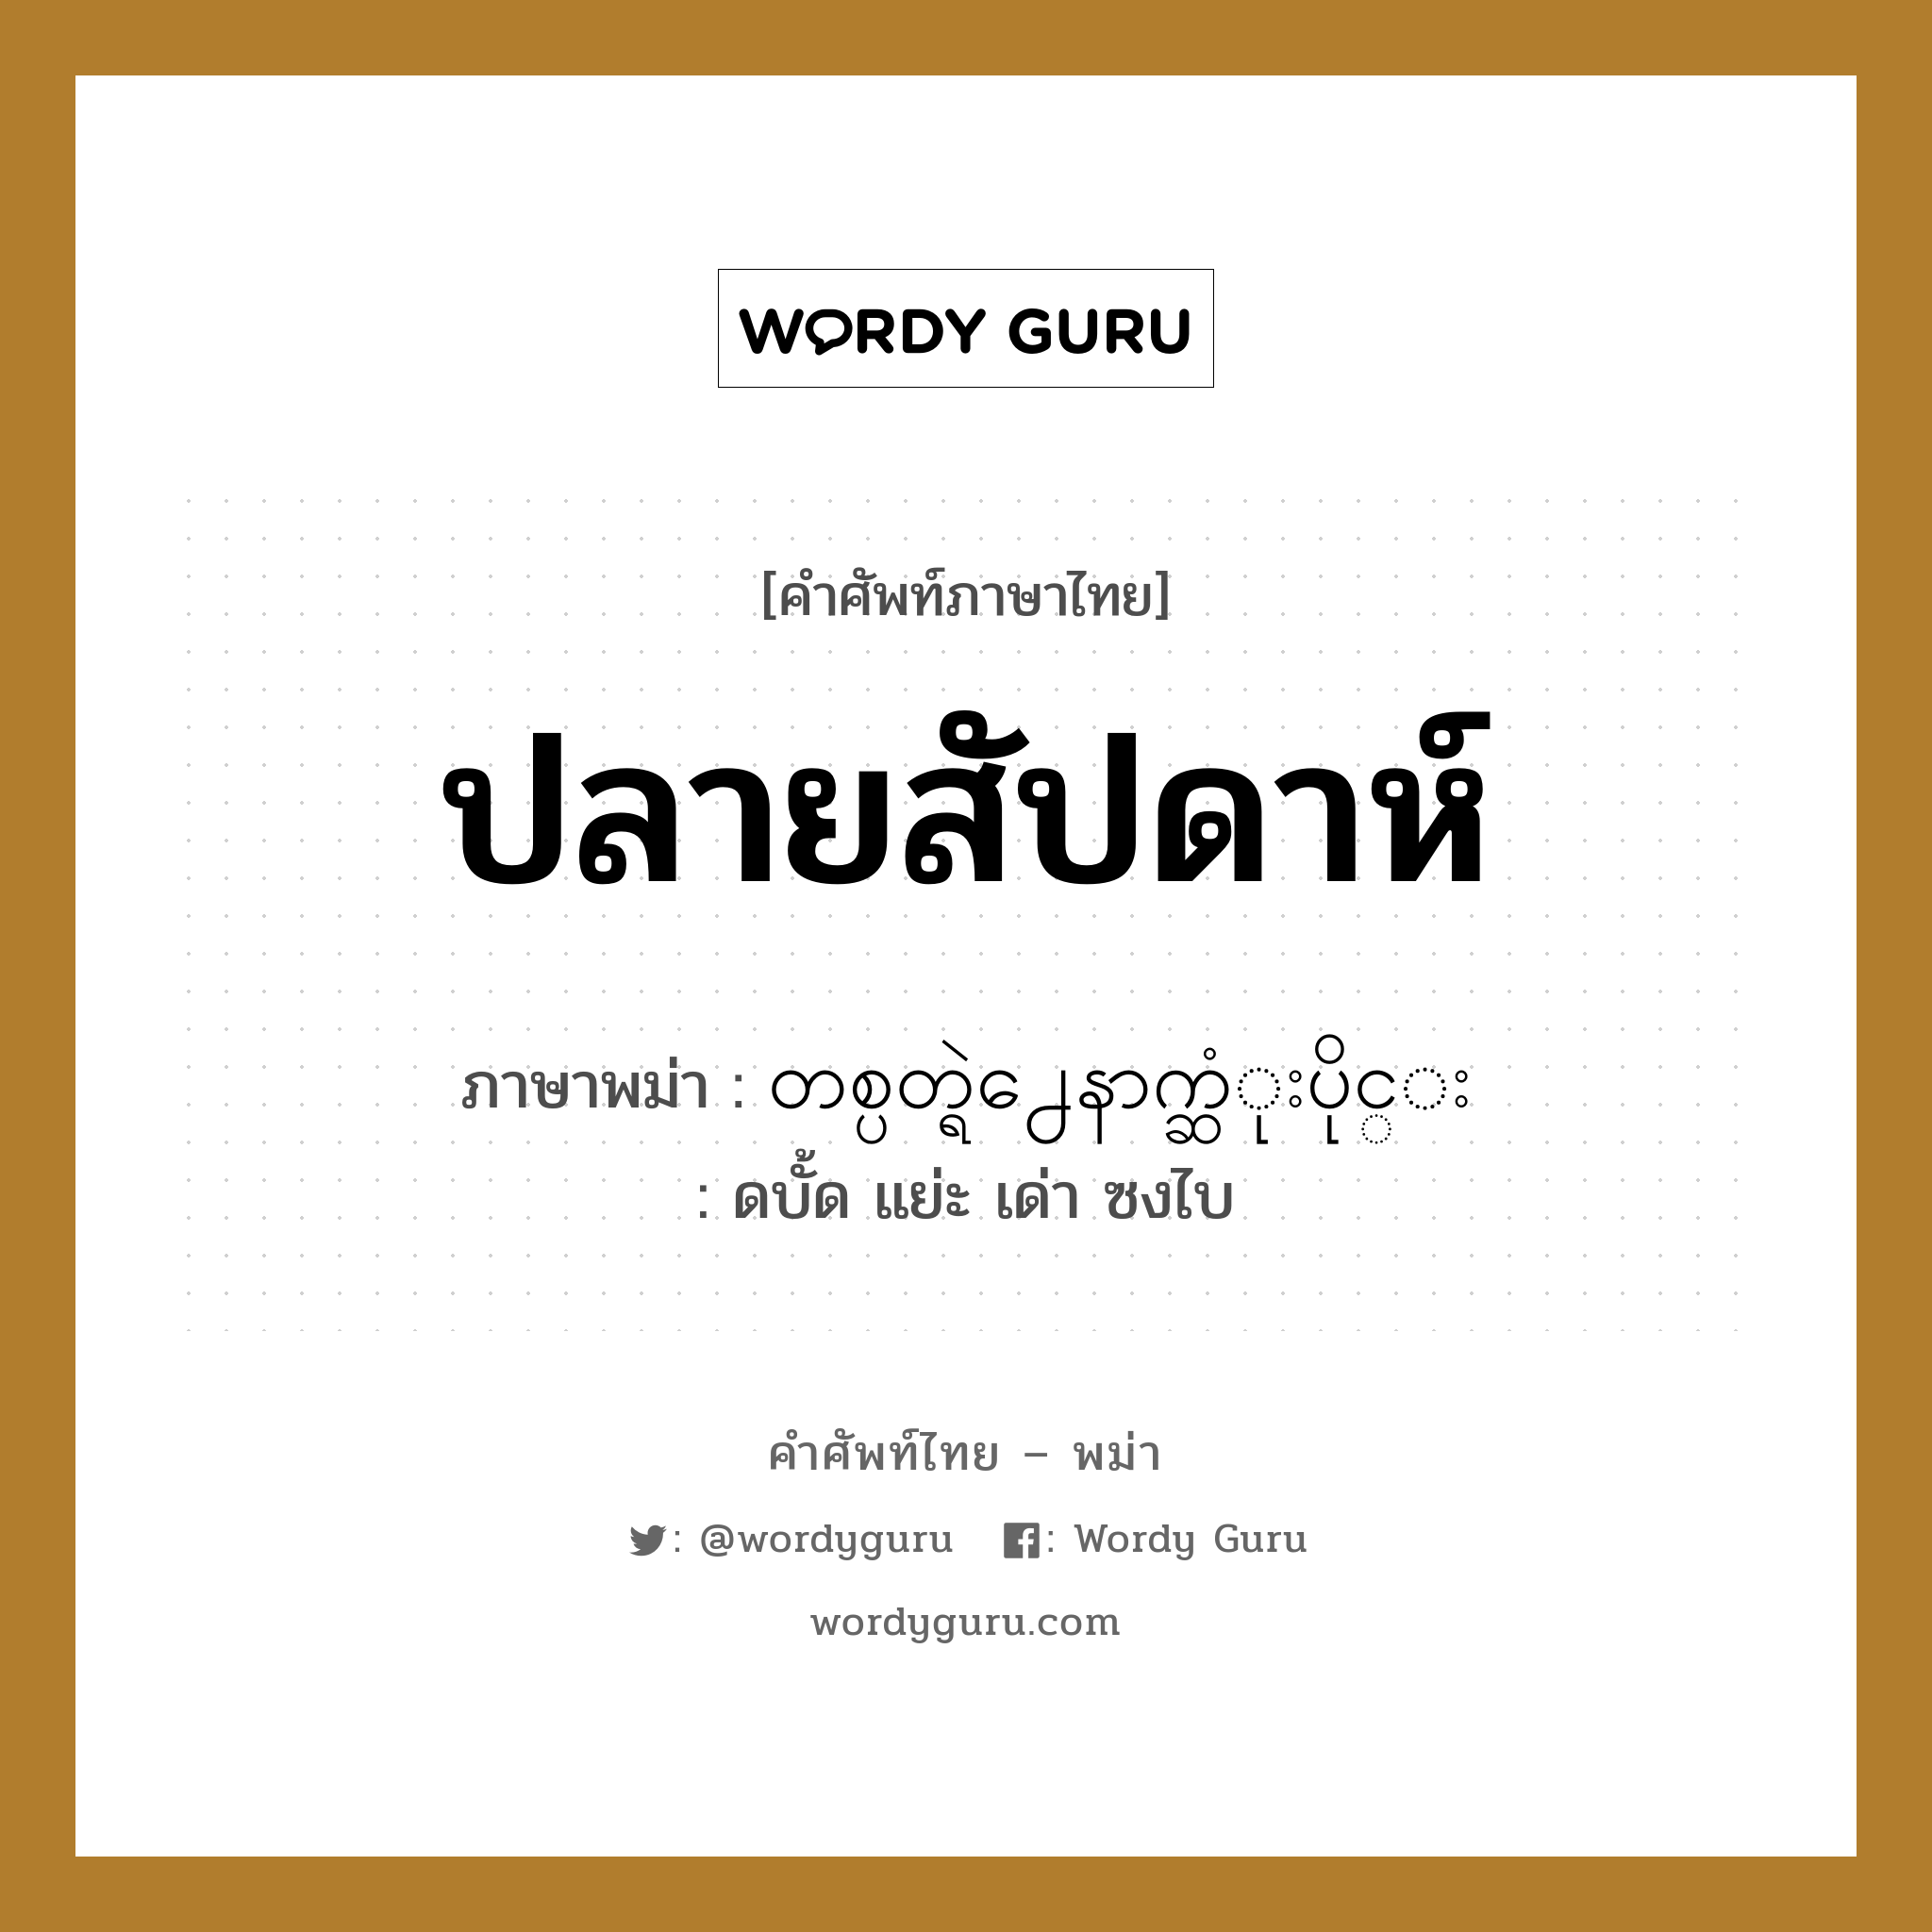 ปลายสัปดาห์ ภาษาพม่าคืออะไร, คำศัพท์ภาษาไทย - พม่า ปลายสัปดาห์ ภาษาพม่า တစ္ပတ္ရဲ႕ေနာက္ဆံုးပိုင္း หมวด หมวดวัน เดือน ปี ดบั้ด แย่ะ เด่า ซงไบ หมวด หมวดวัน เดือน ปี